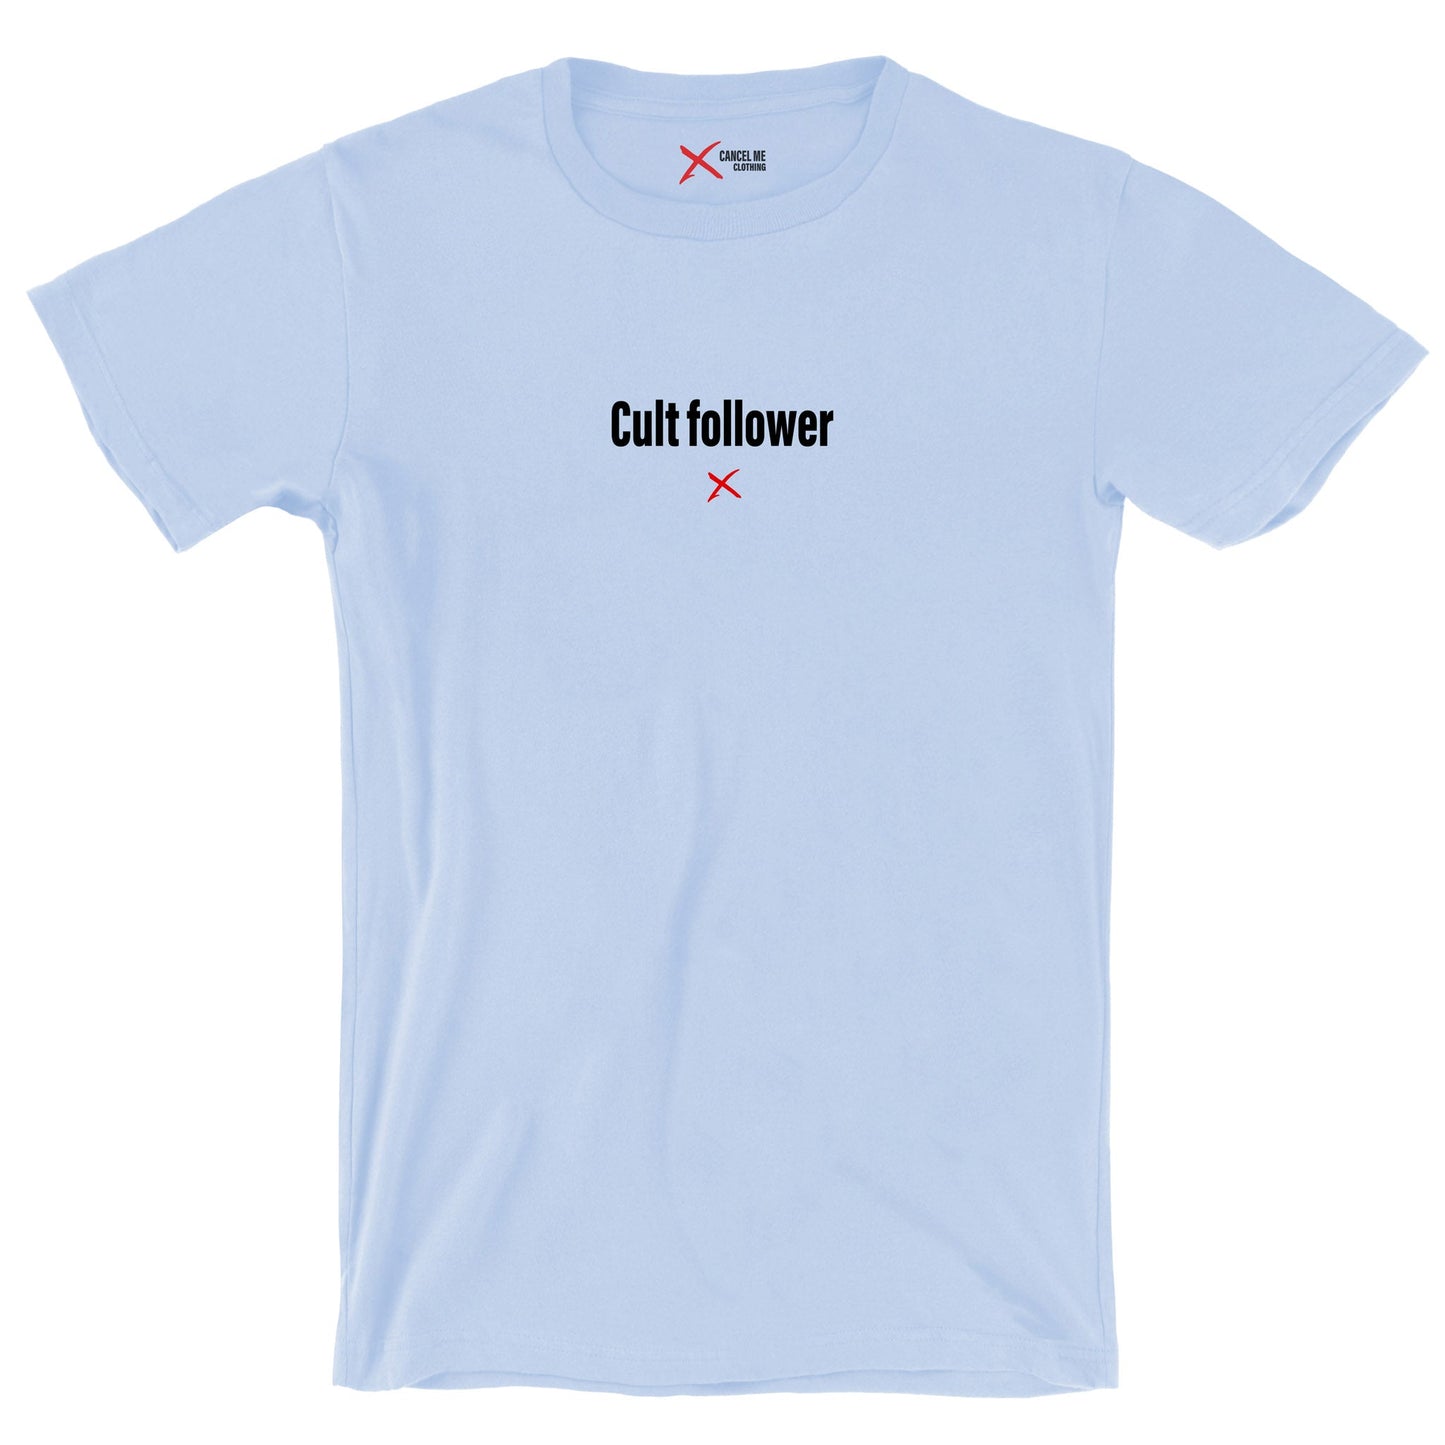 Cult follower - Shirt